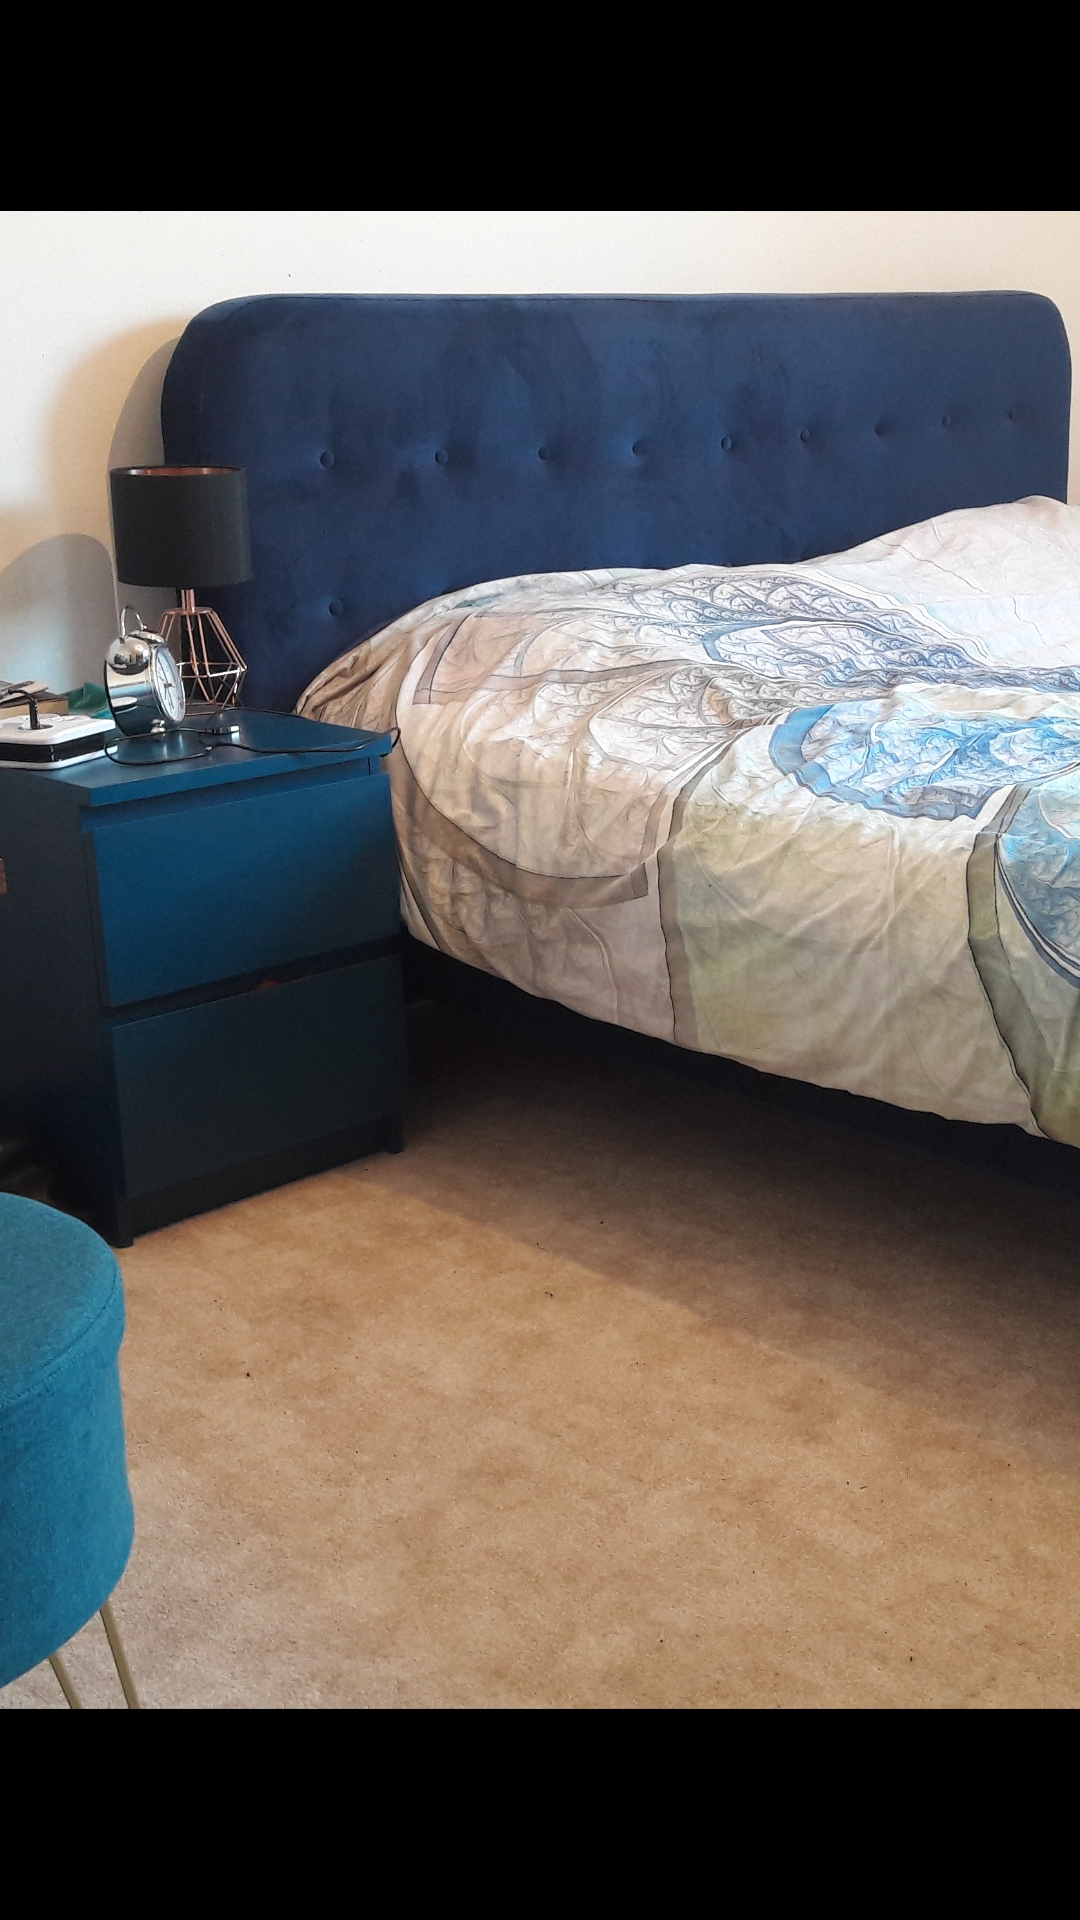 Neues Bett aus Samt in dunkelblau  #Samtliebe #dunkelblau #Teppichinbeige #makesmehappy